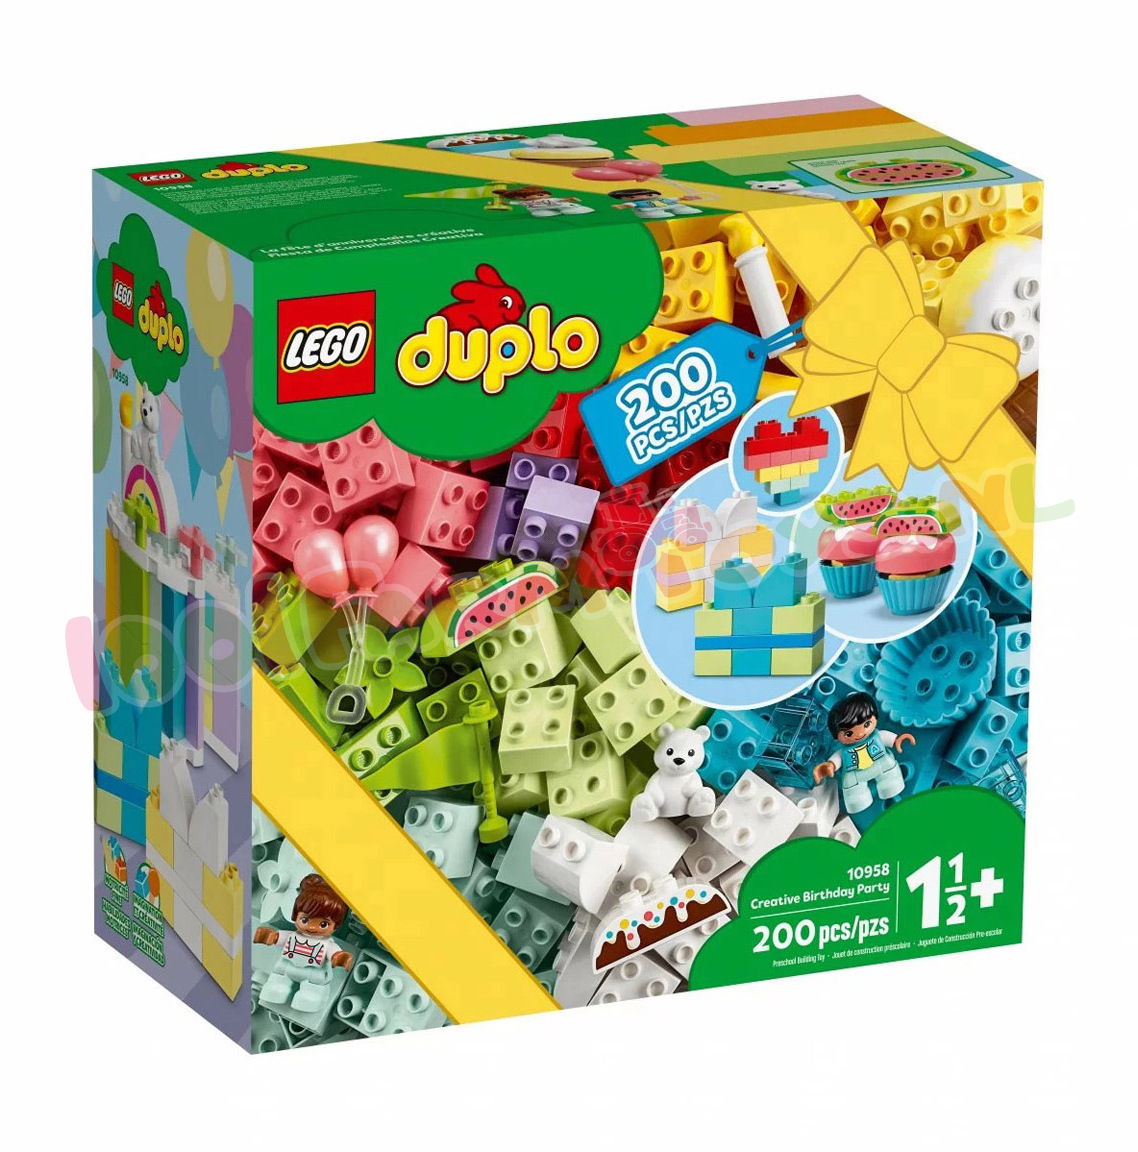 Bekritiseren galop banner LEGO Doos met 200 stuks DUPLO Blokken - 10958 - Uitverkocht Farm -  1001Farmtoys landbouwspeelgoed - Duplo Classic Serie Creatieve DUPLO blokken  voor